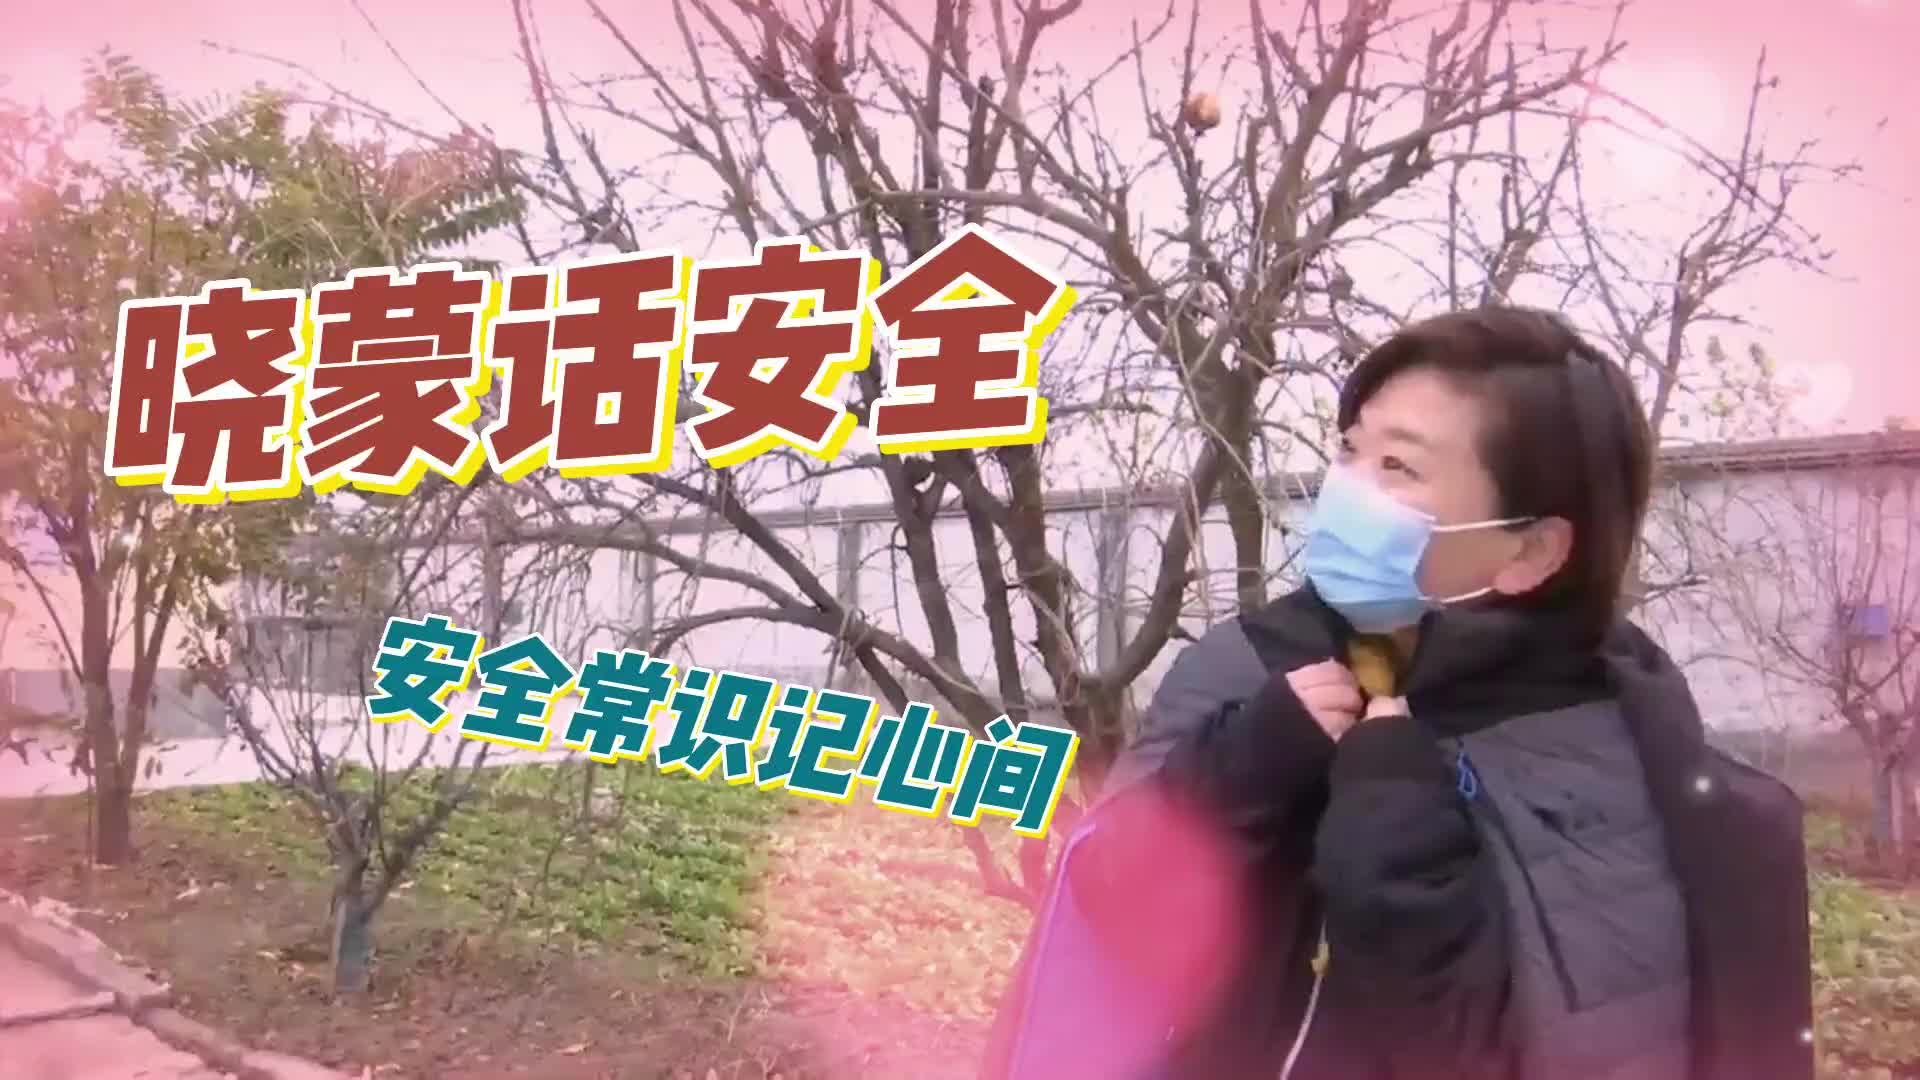 更济宁 | 晓蒙话安全：冬季用水安全篇